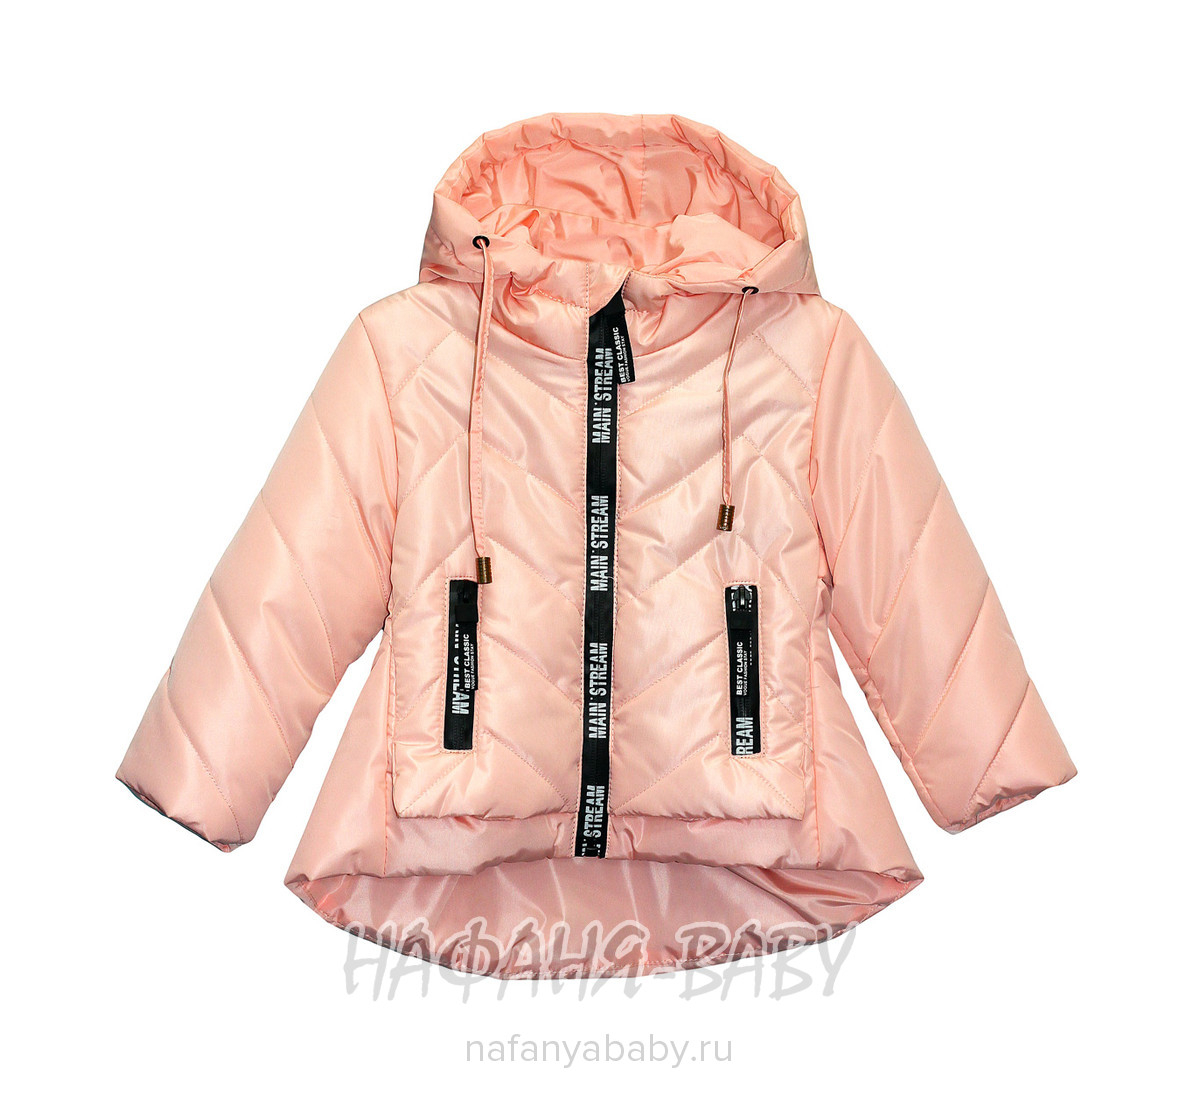 Детская демисезонная куртка WAISHIDA, купить в интернет магазине Нафаня. арт: 1605.